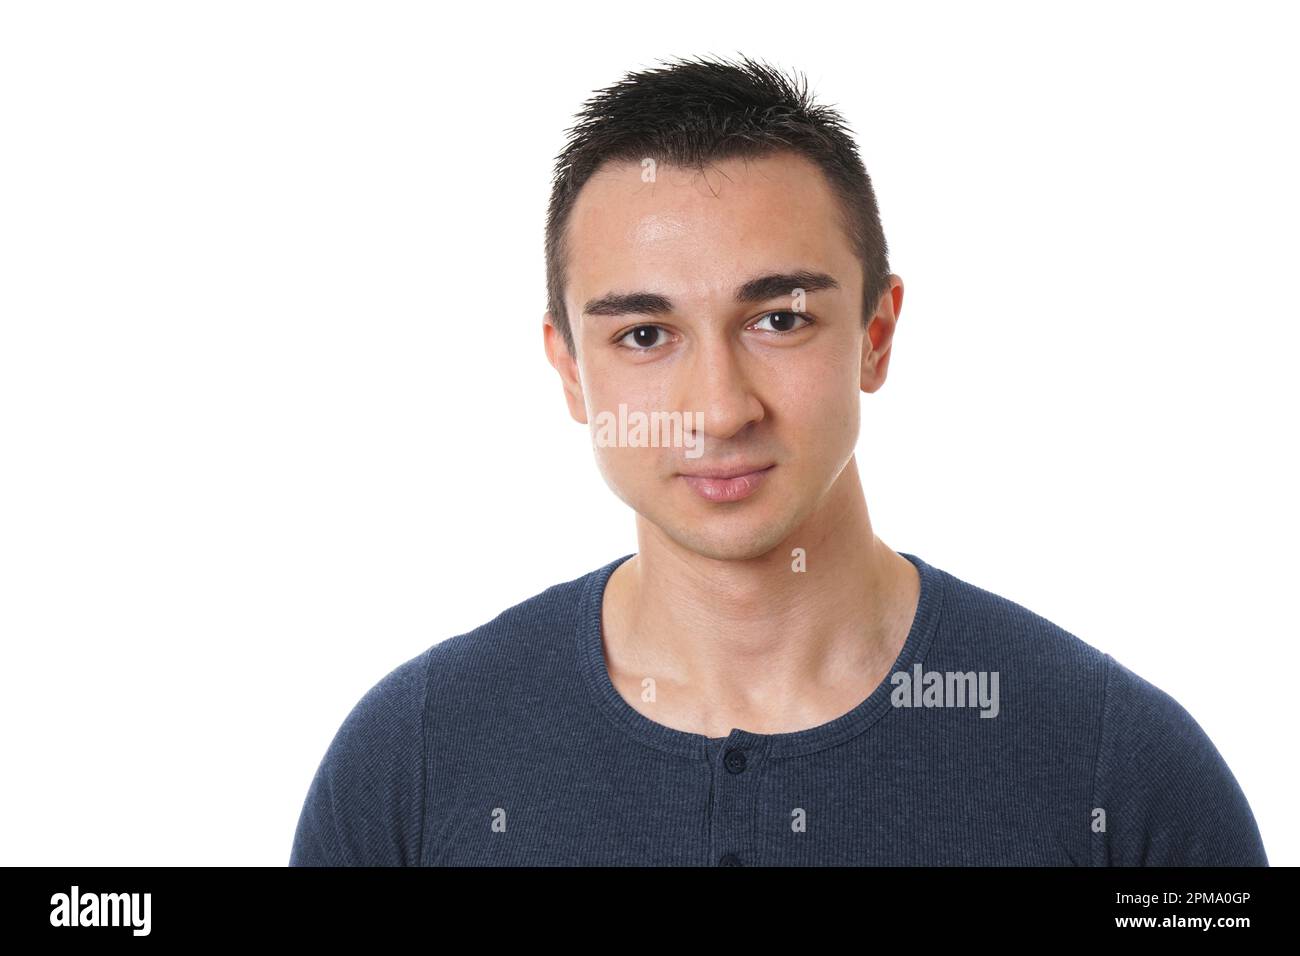 Kopf- und Schulterporträt eines gutaussehenden jungen Mannes mit kurzen dunklen Haaren Stockfoto